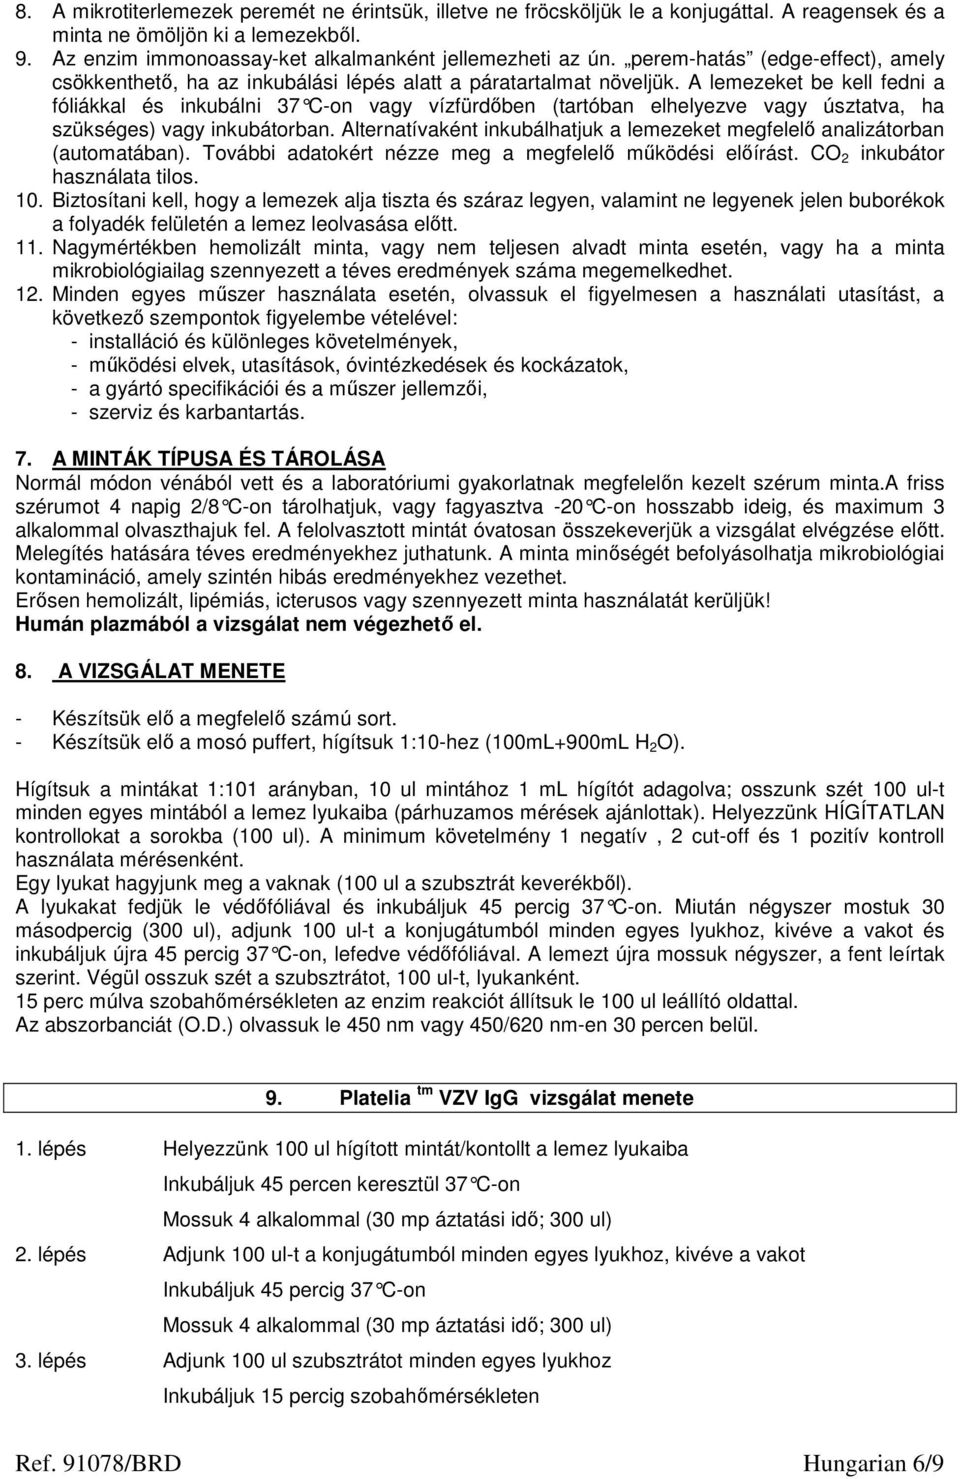 PLATELIA VZV IgG TESZT - PDF Ingyenes letöltés